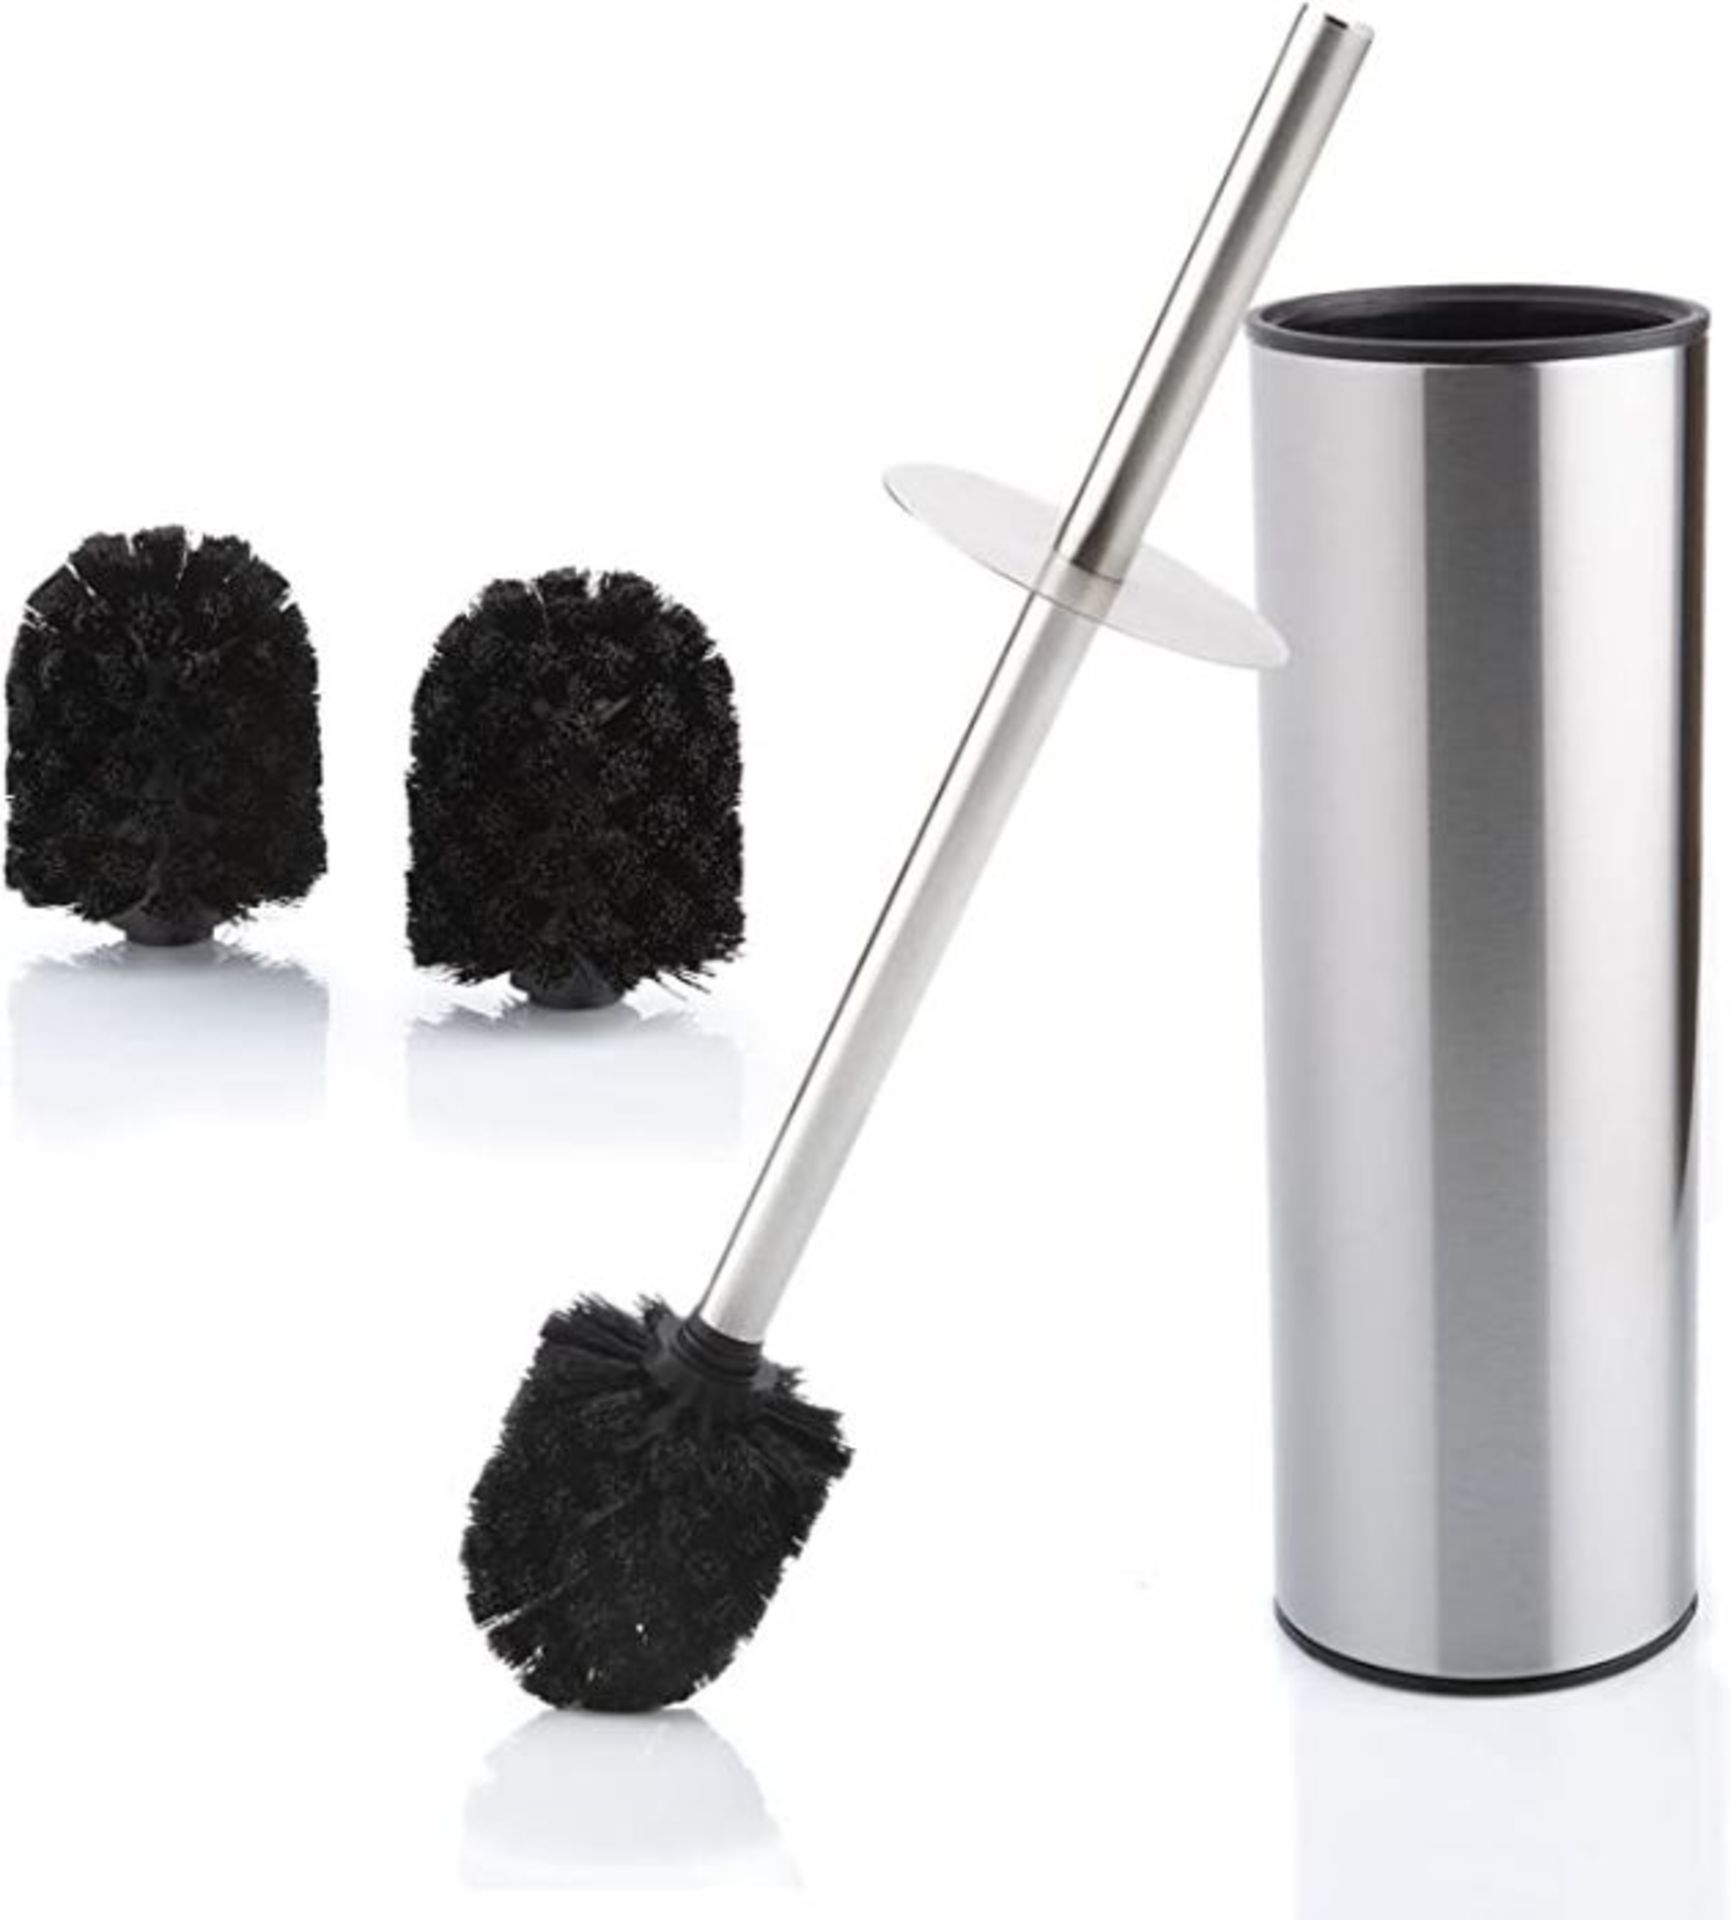 Bamodi Toilet Brush with Holder - Free Standing Stainless Steel Toilet Brushes including 3 Brush